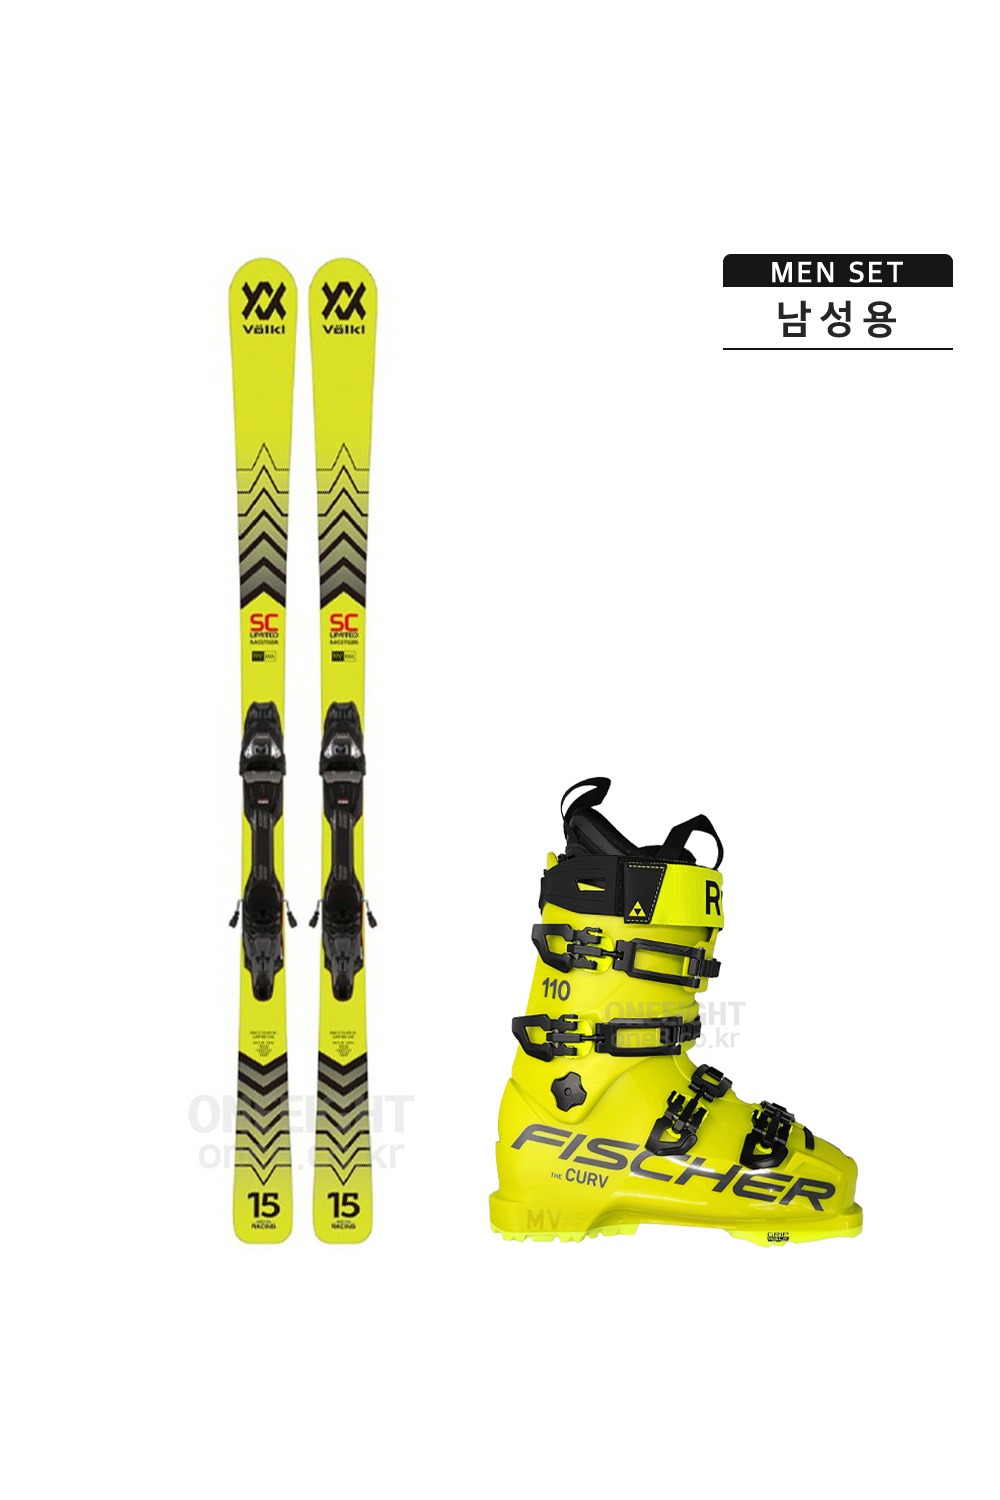 P061 뵐클 남성 스키 세트